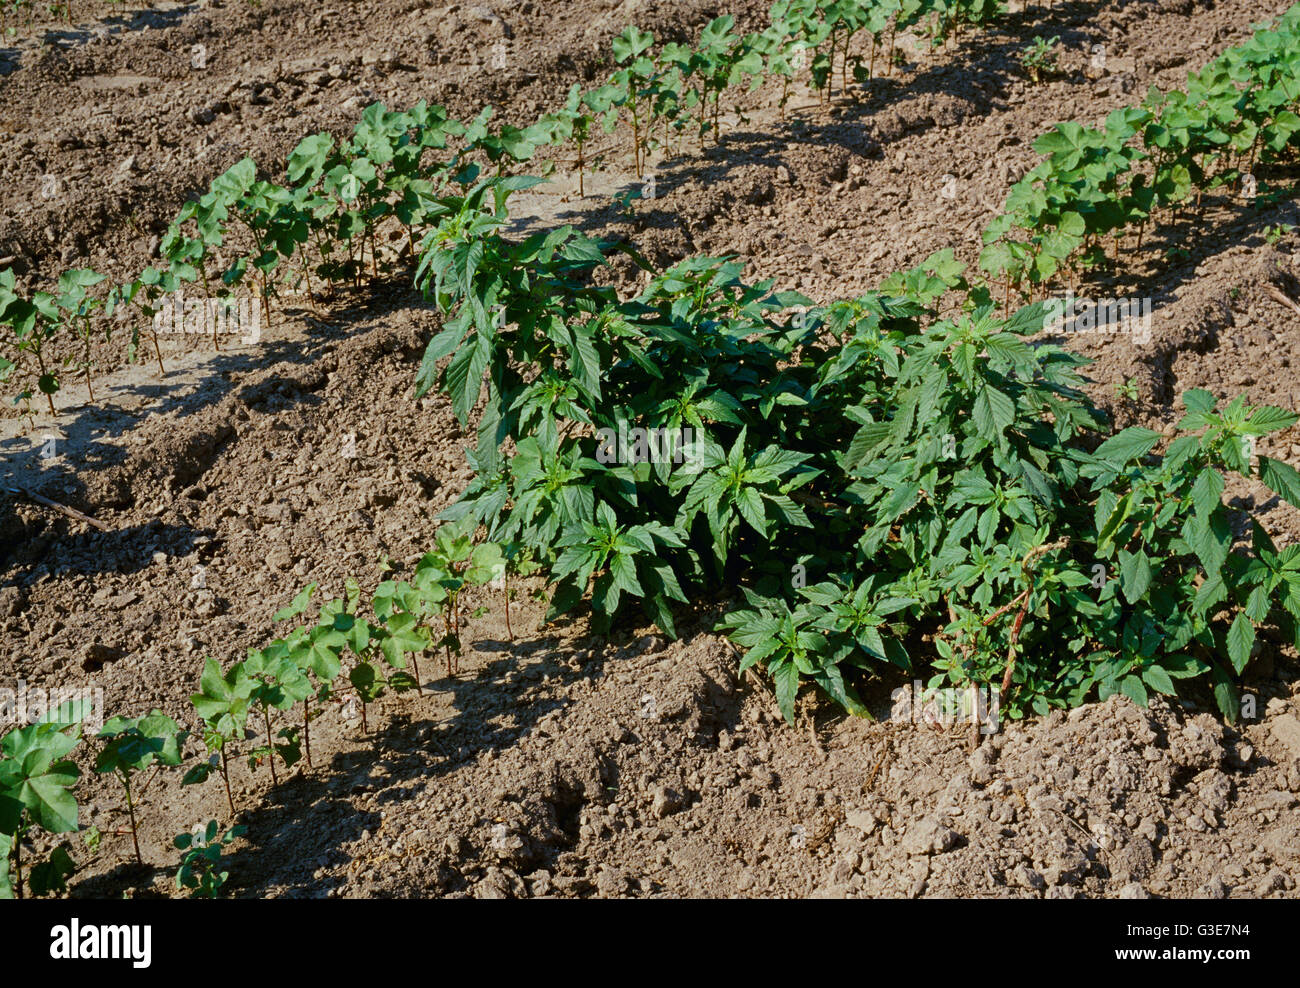 Landwirtschaft - Unkraut, Fuchsschwanz (Amaranthus SP.) Befall im frühen Wachstum Baumwolle / Arkansas, USA. Stockfoto